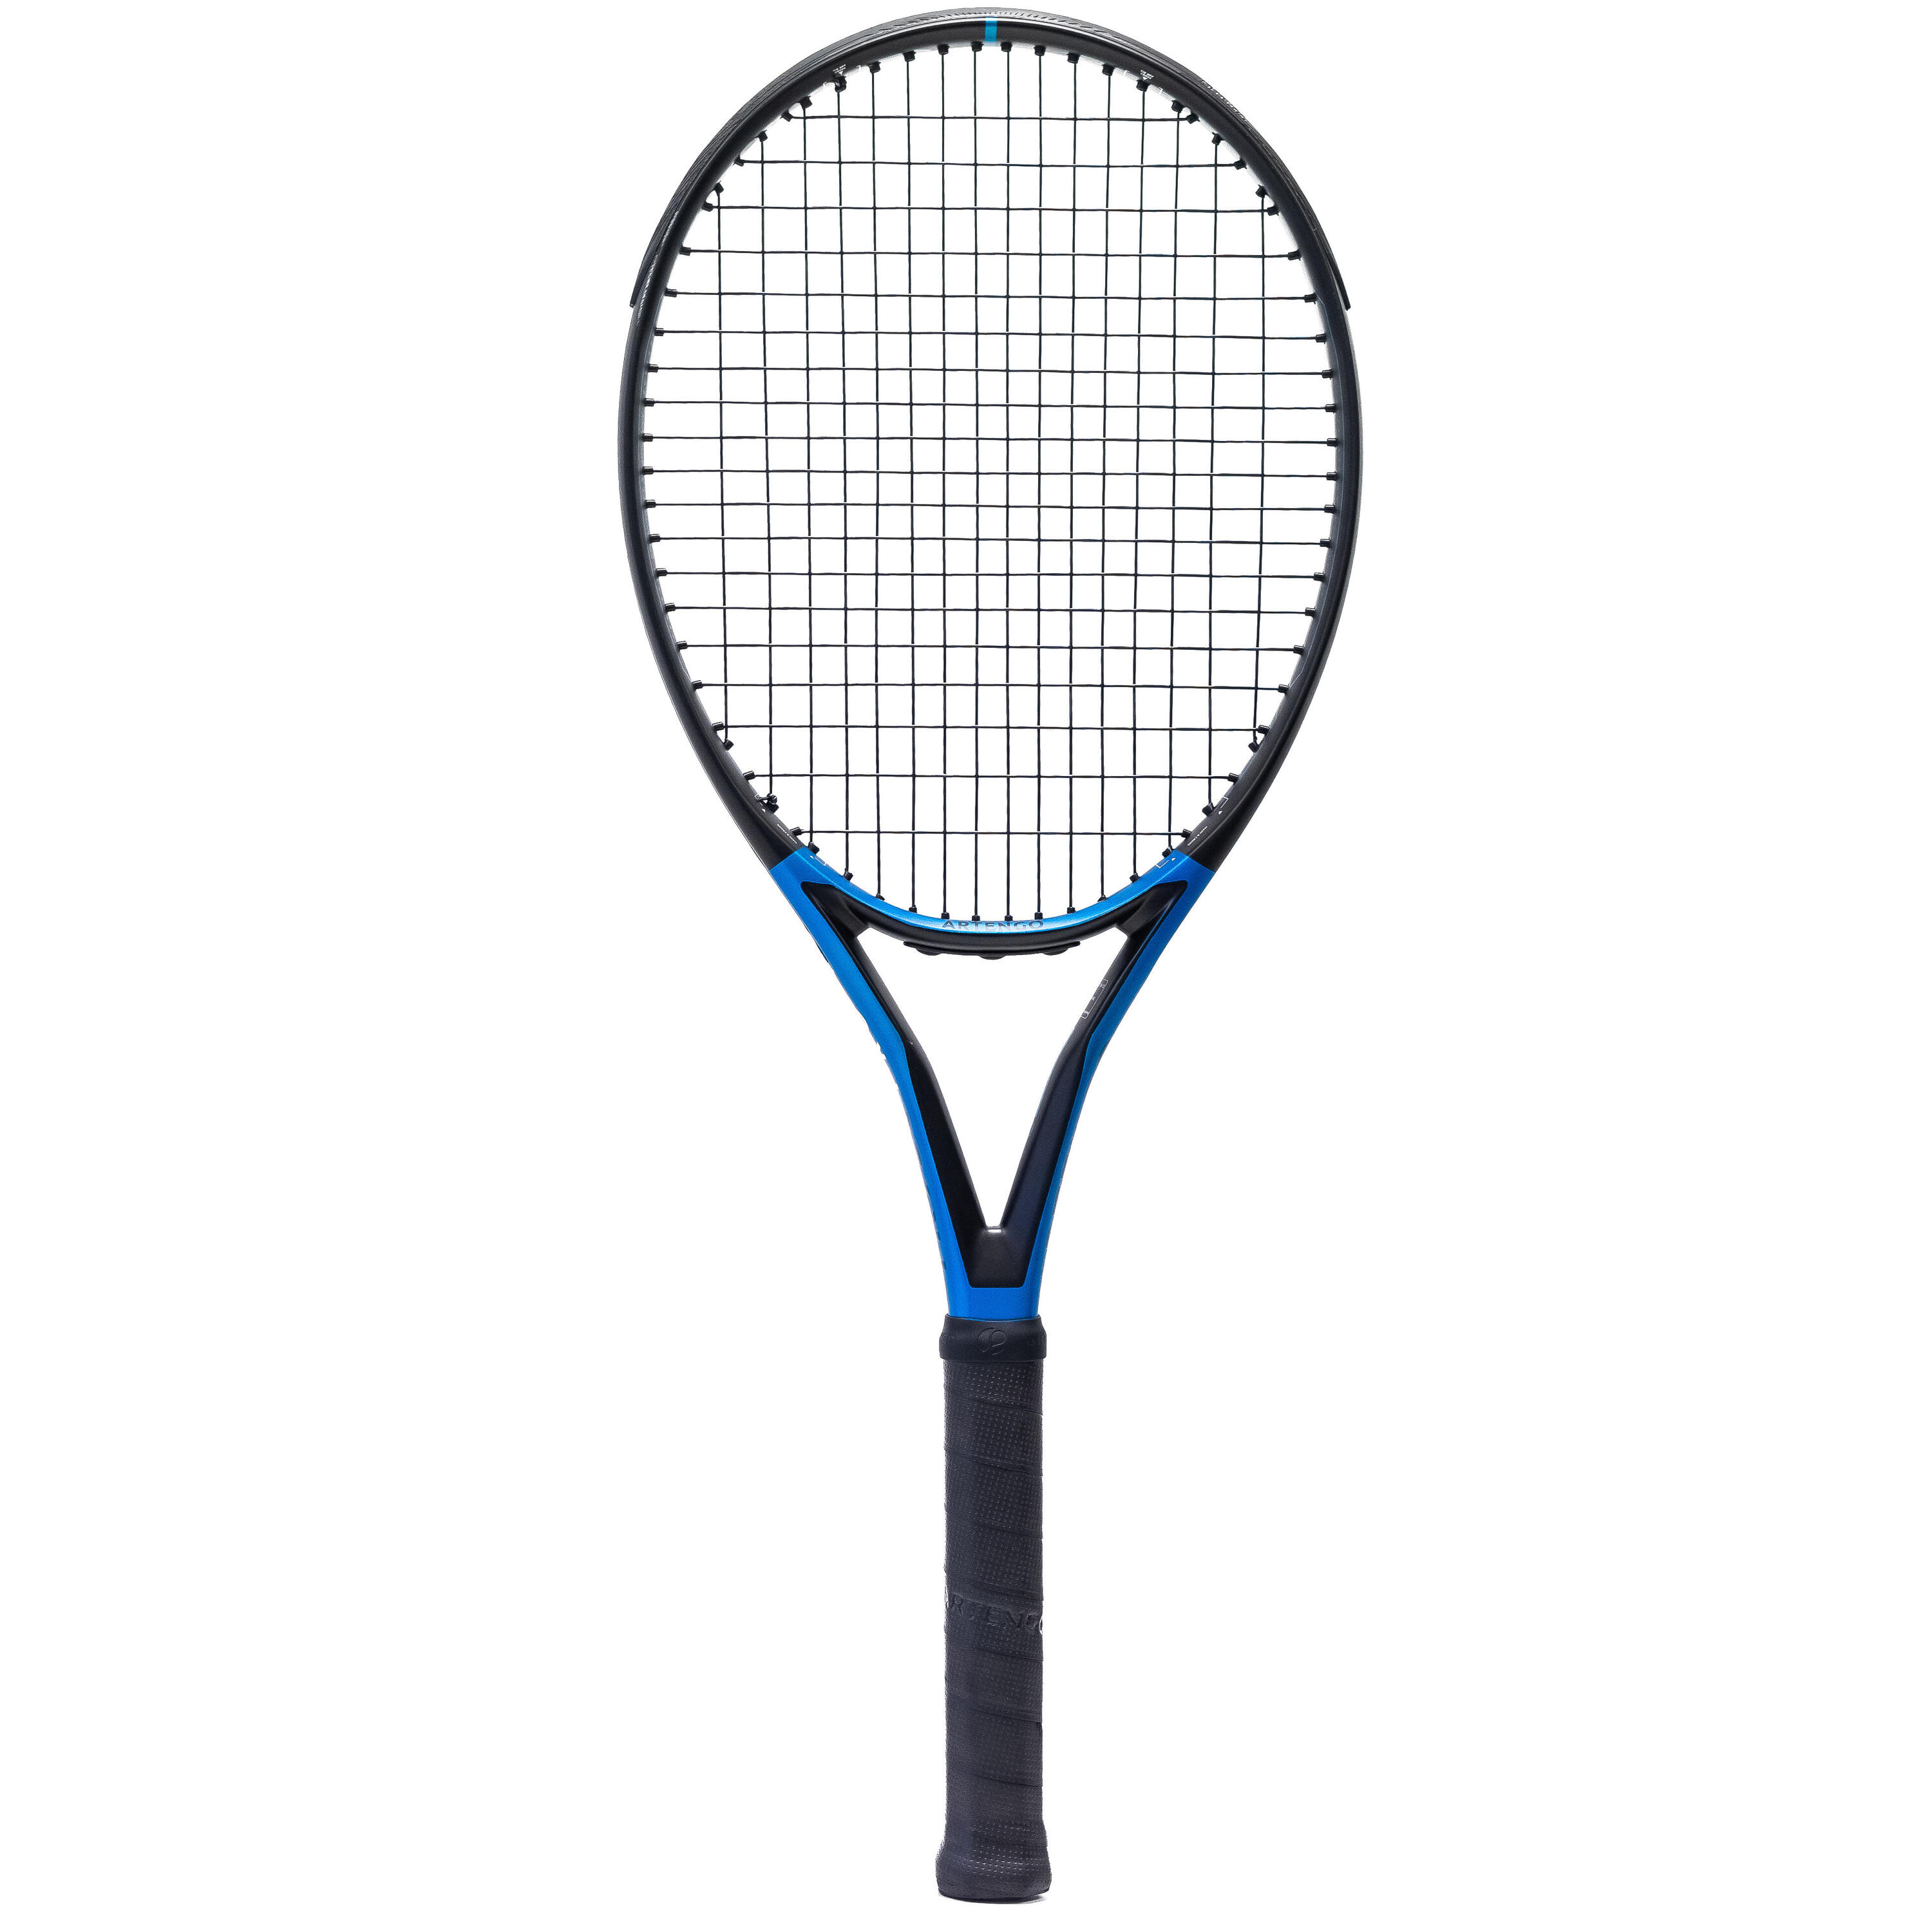 Теннисная ракетка - TR930 Spin Pro Black/Blue 300 г ARTENGO, черный/кобальт